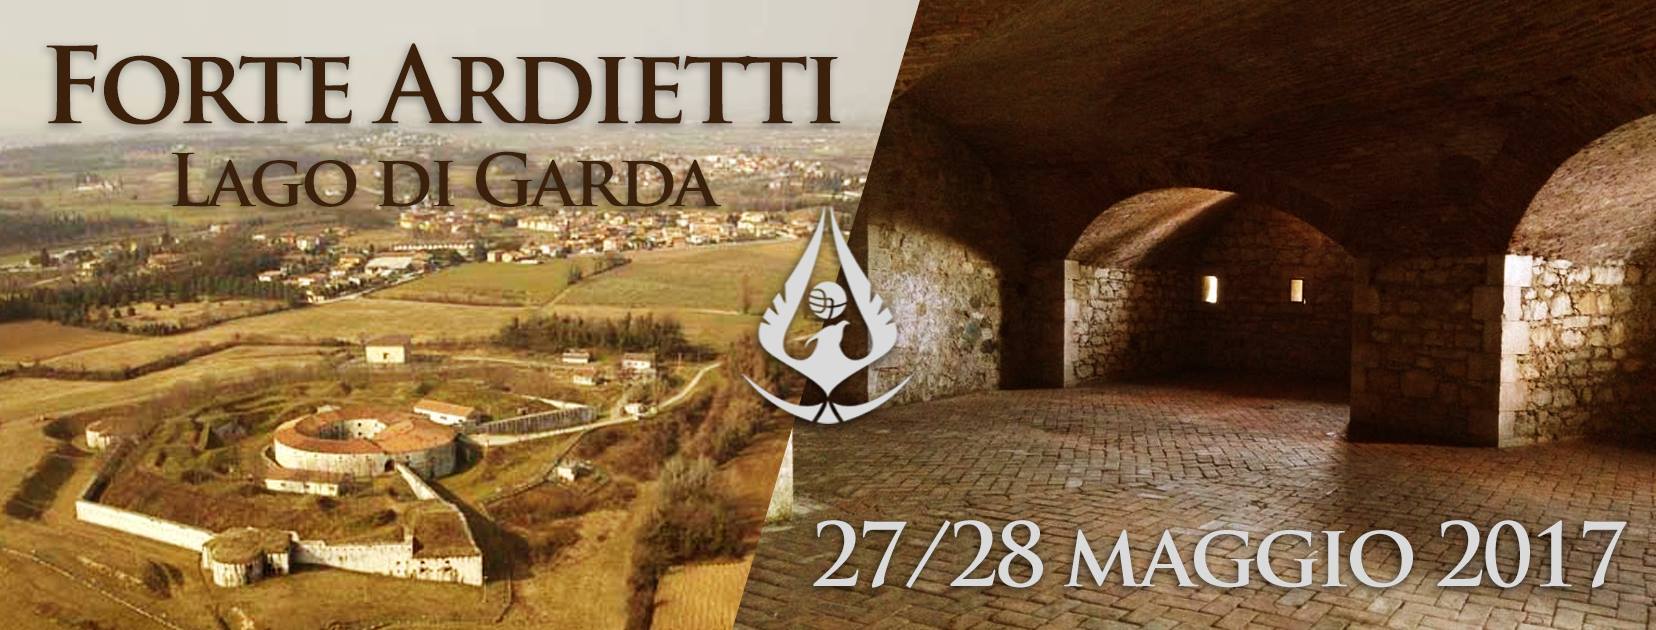 Forte Ardietti / Lago di Garda – 27/28 Maggio 2017